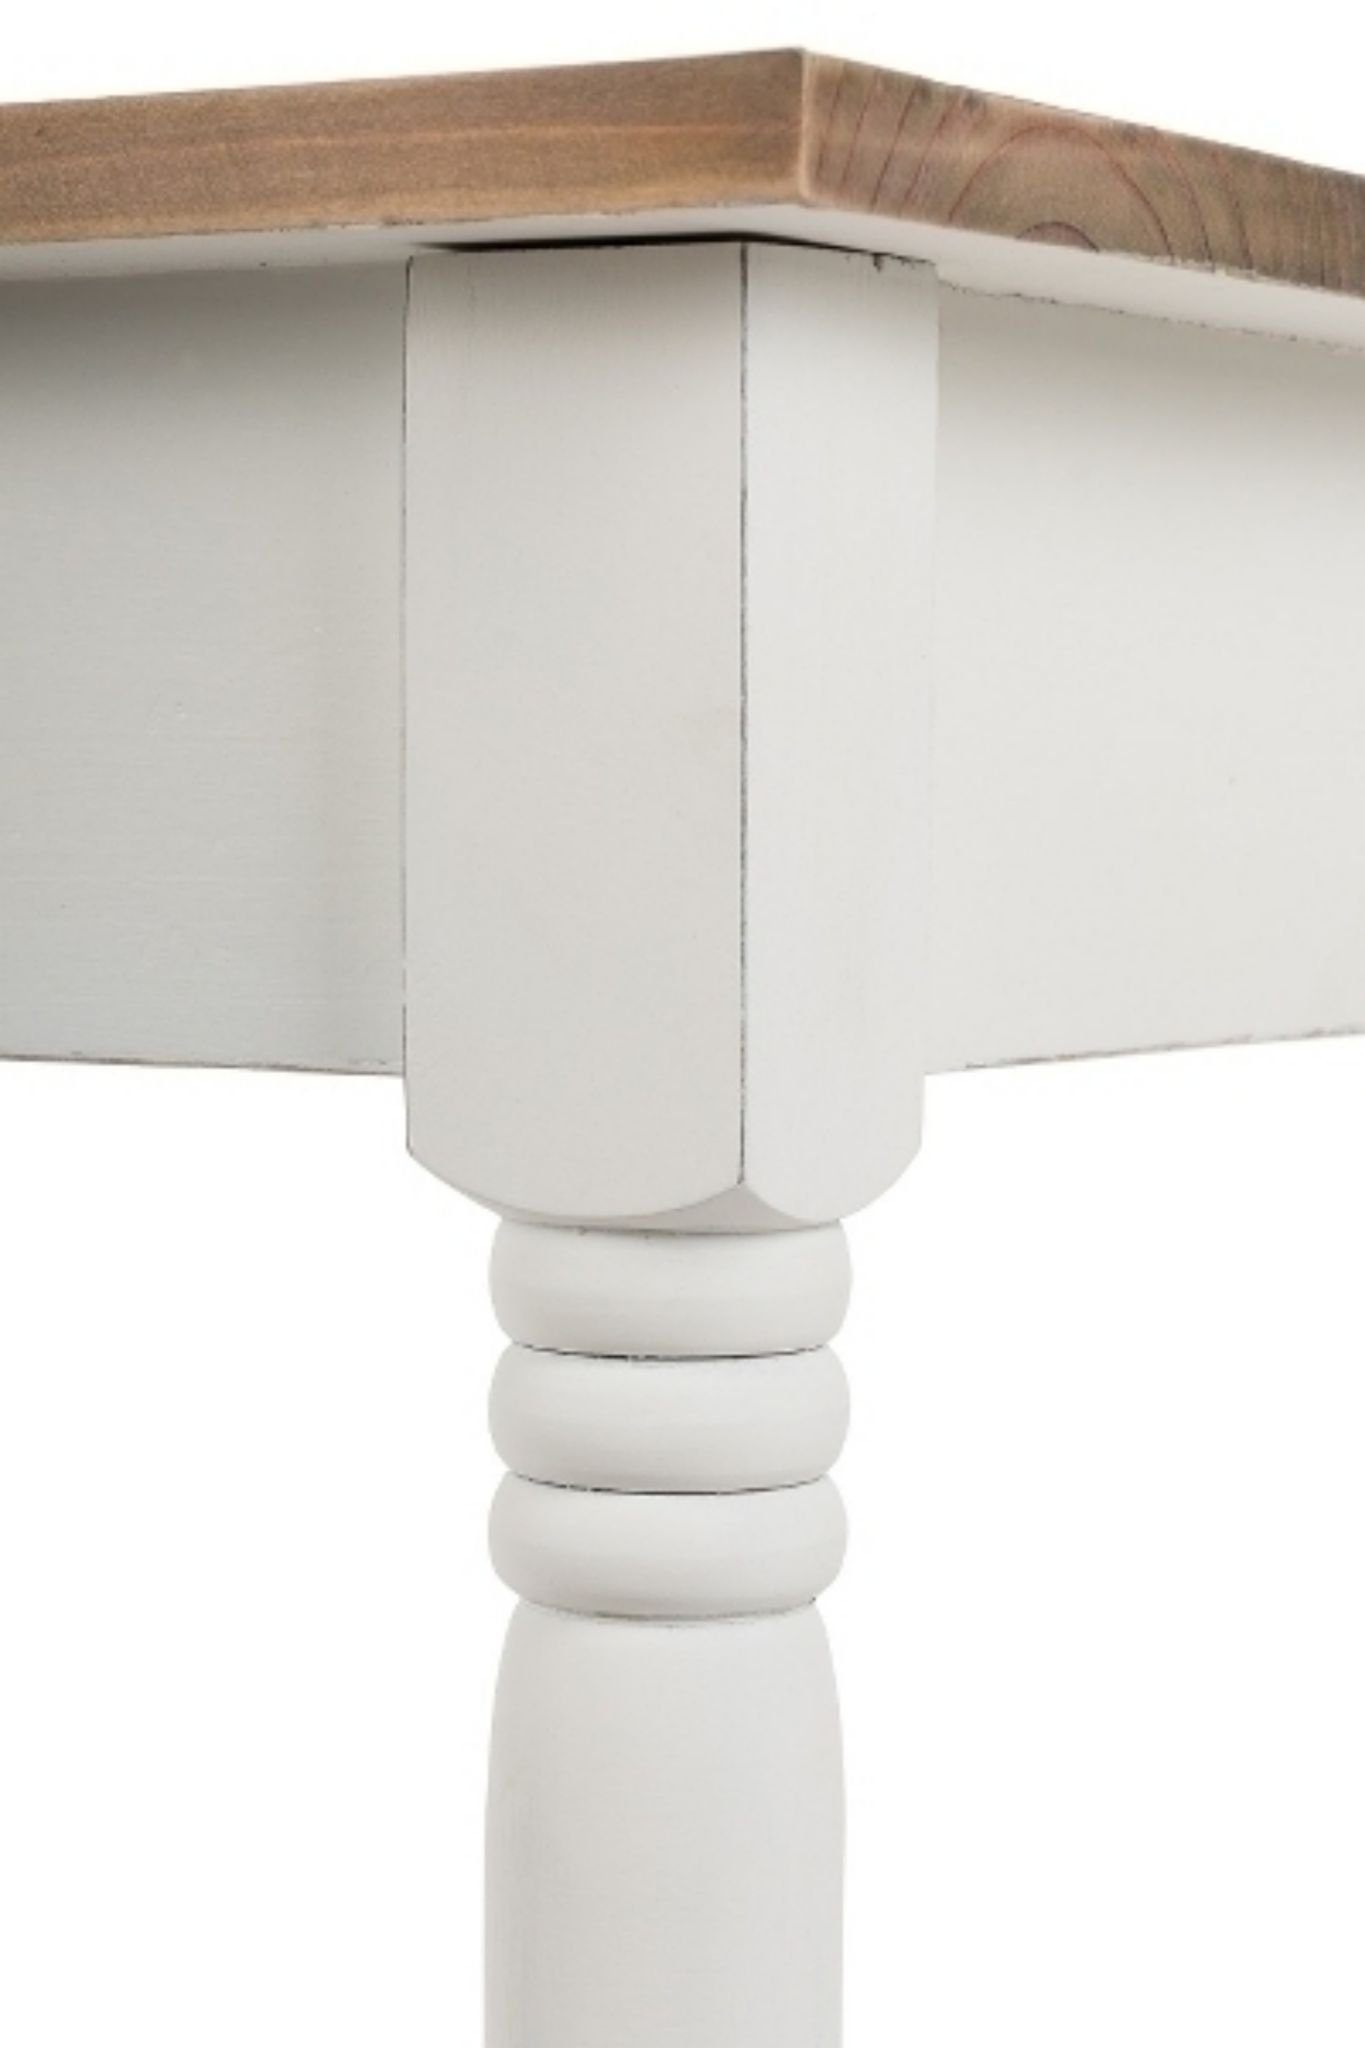 Landhausstil Esstisch: holz (FALSCH), elbmöbel 80x80 Konsolentisch Esstisch weiß 80x80x77 cm Küchentisch